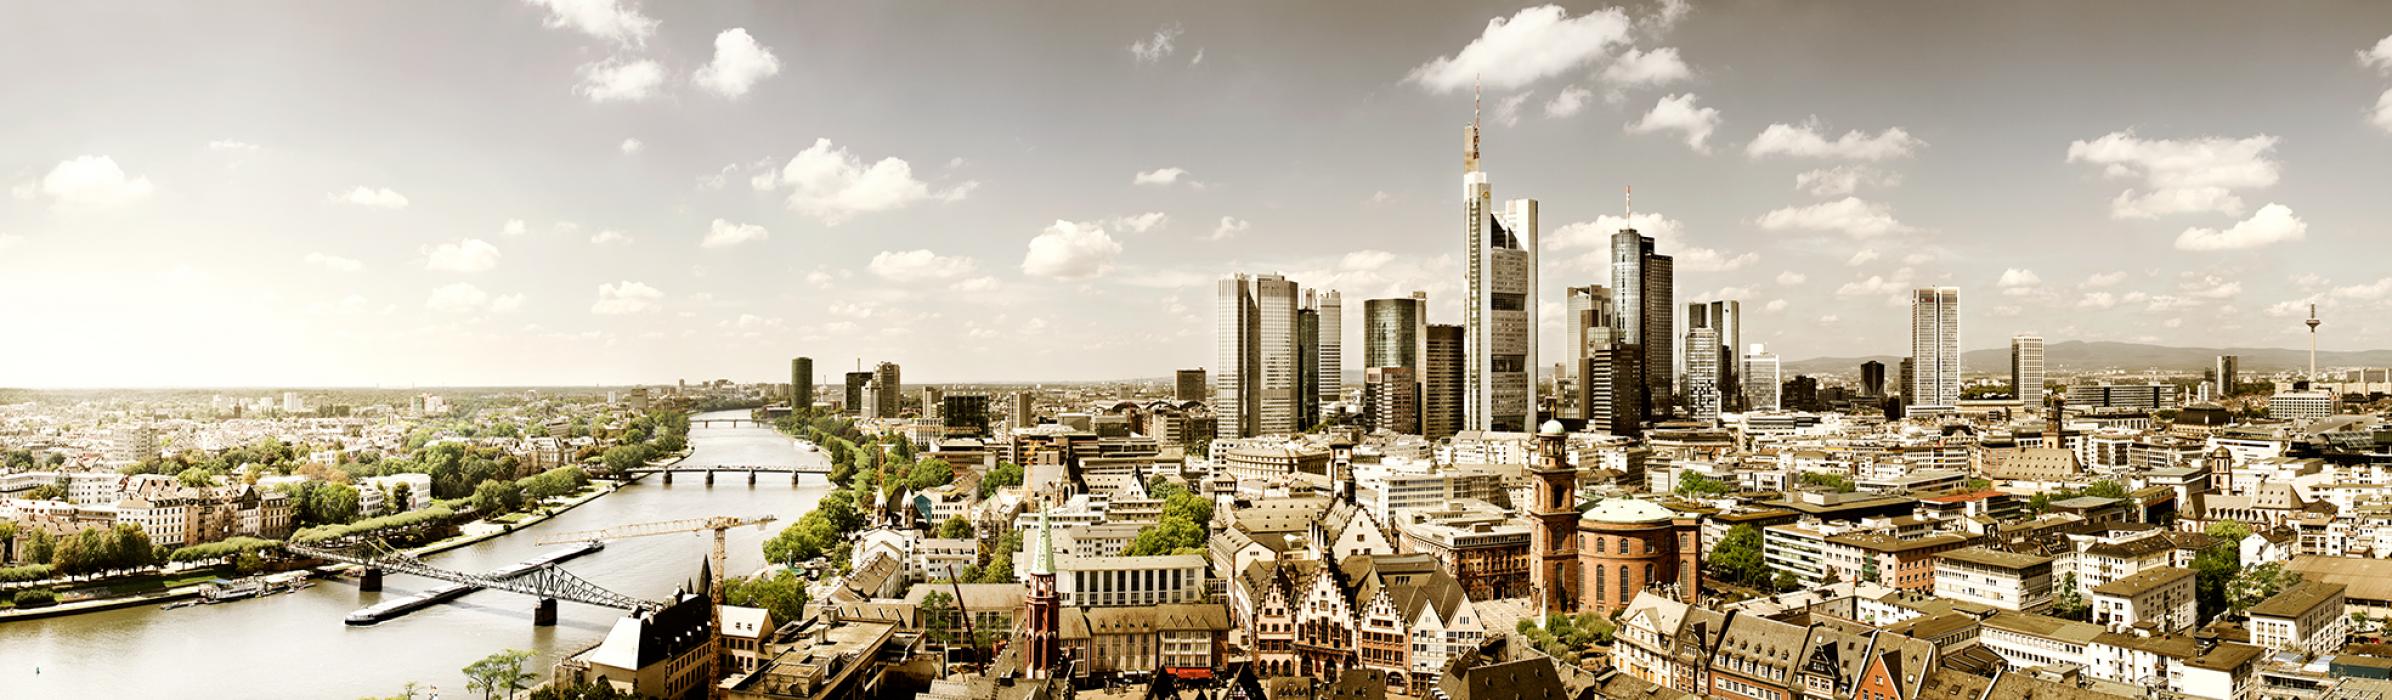 Projekt: Frankfurt